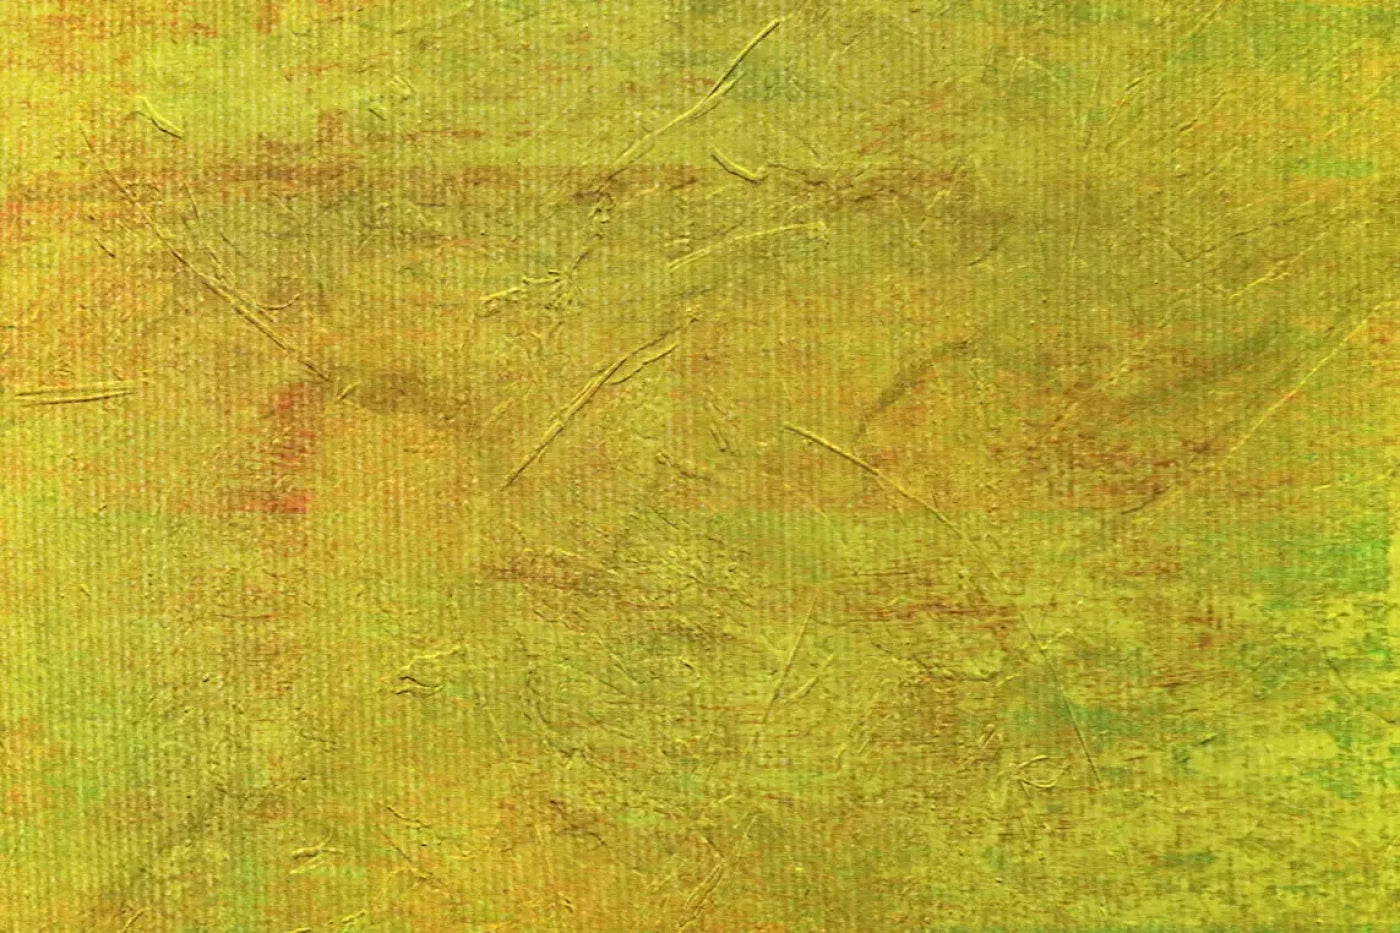 Lemon Lime 5X4 Rubbermat Floor ( 60 X 48 Inch ) Backdrop